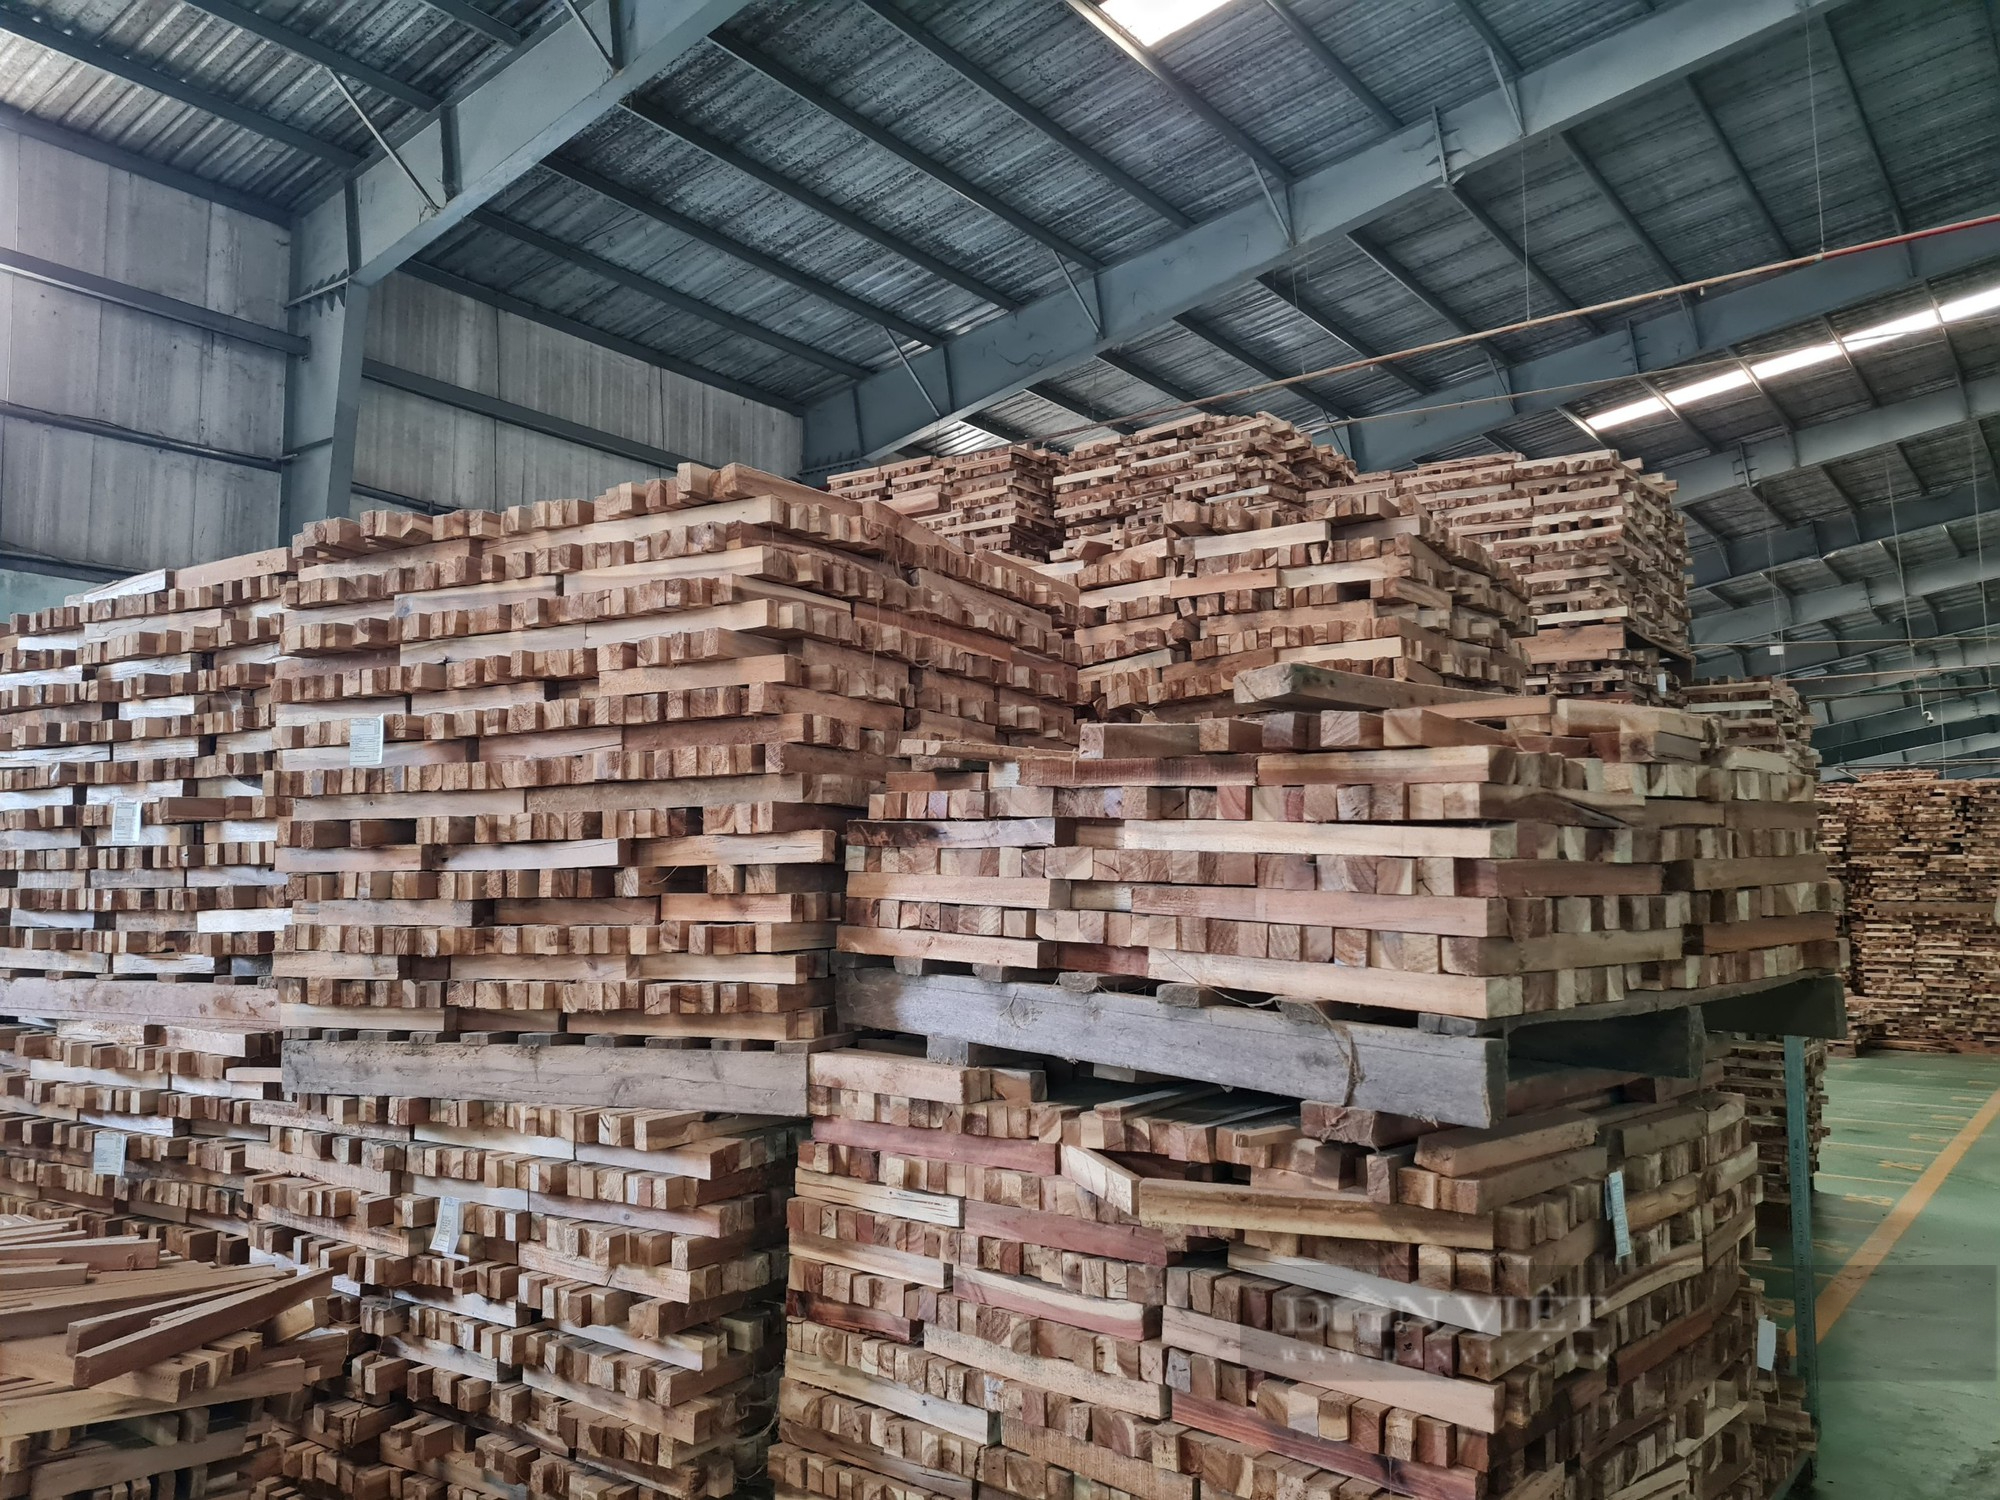 Mỹ đột ngột cắt giảm đơn hàng, doanh nghiệp làm một loại sản phẩm gỗ lao đao chưa từng có - Ảnh 1.